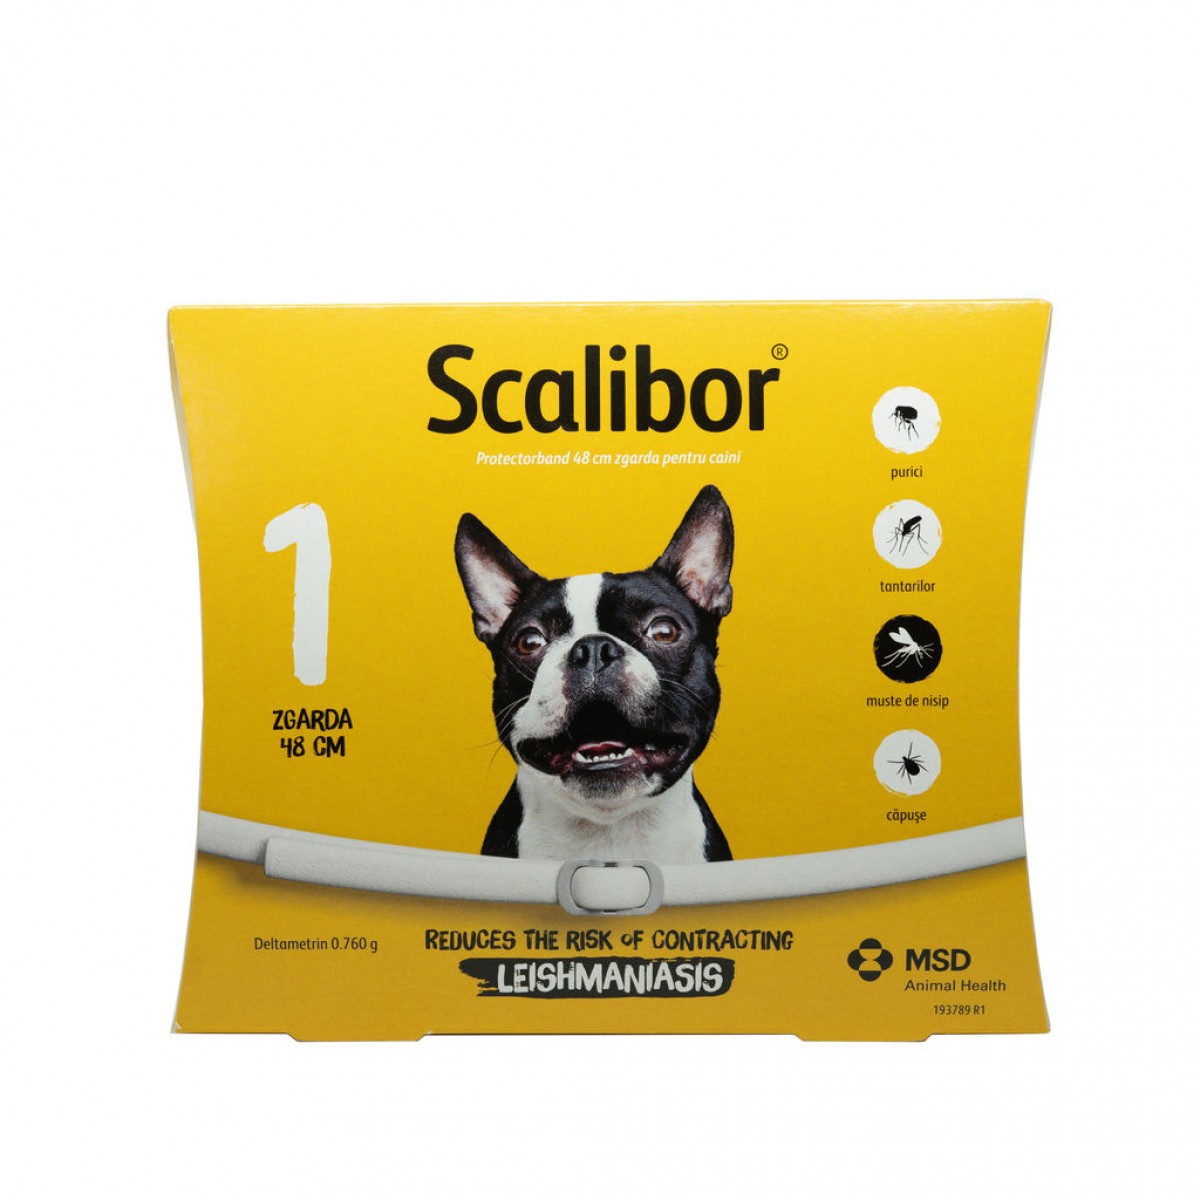 Zgardă antiparazitară Scalibor 48 cm, Antiparazitare externe, Antiparazitare, Câini 